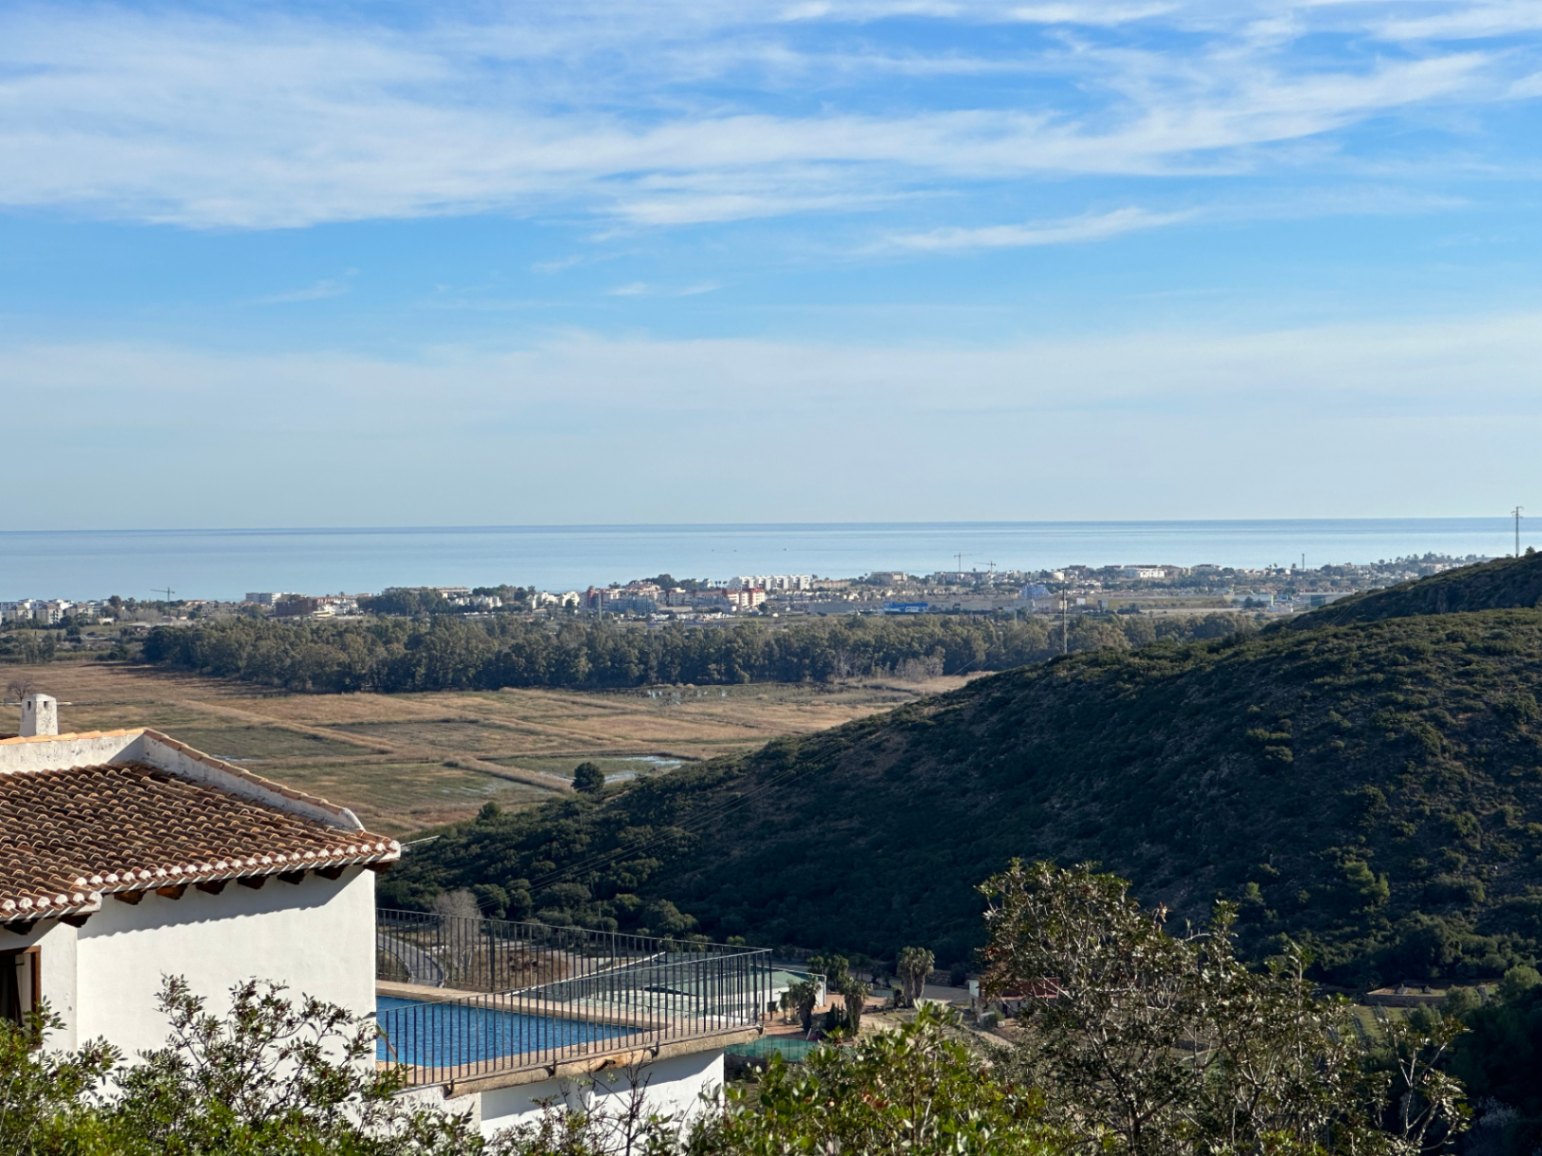 Terrain magique avec vue sur la mer à MontePego